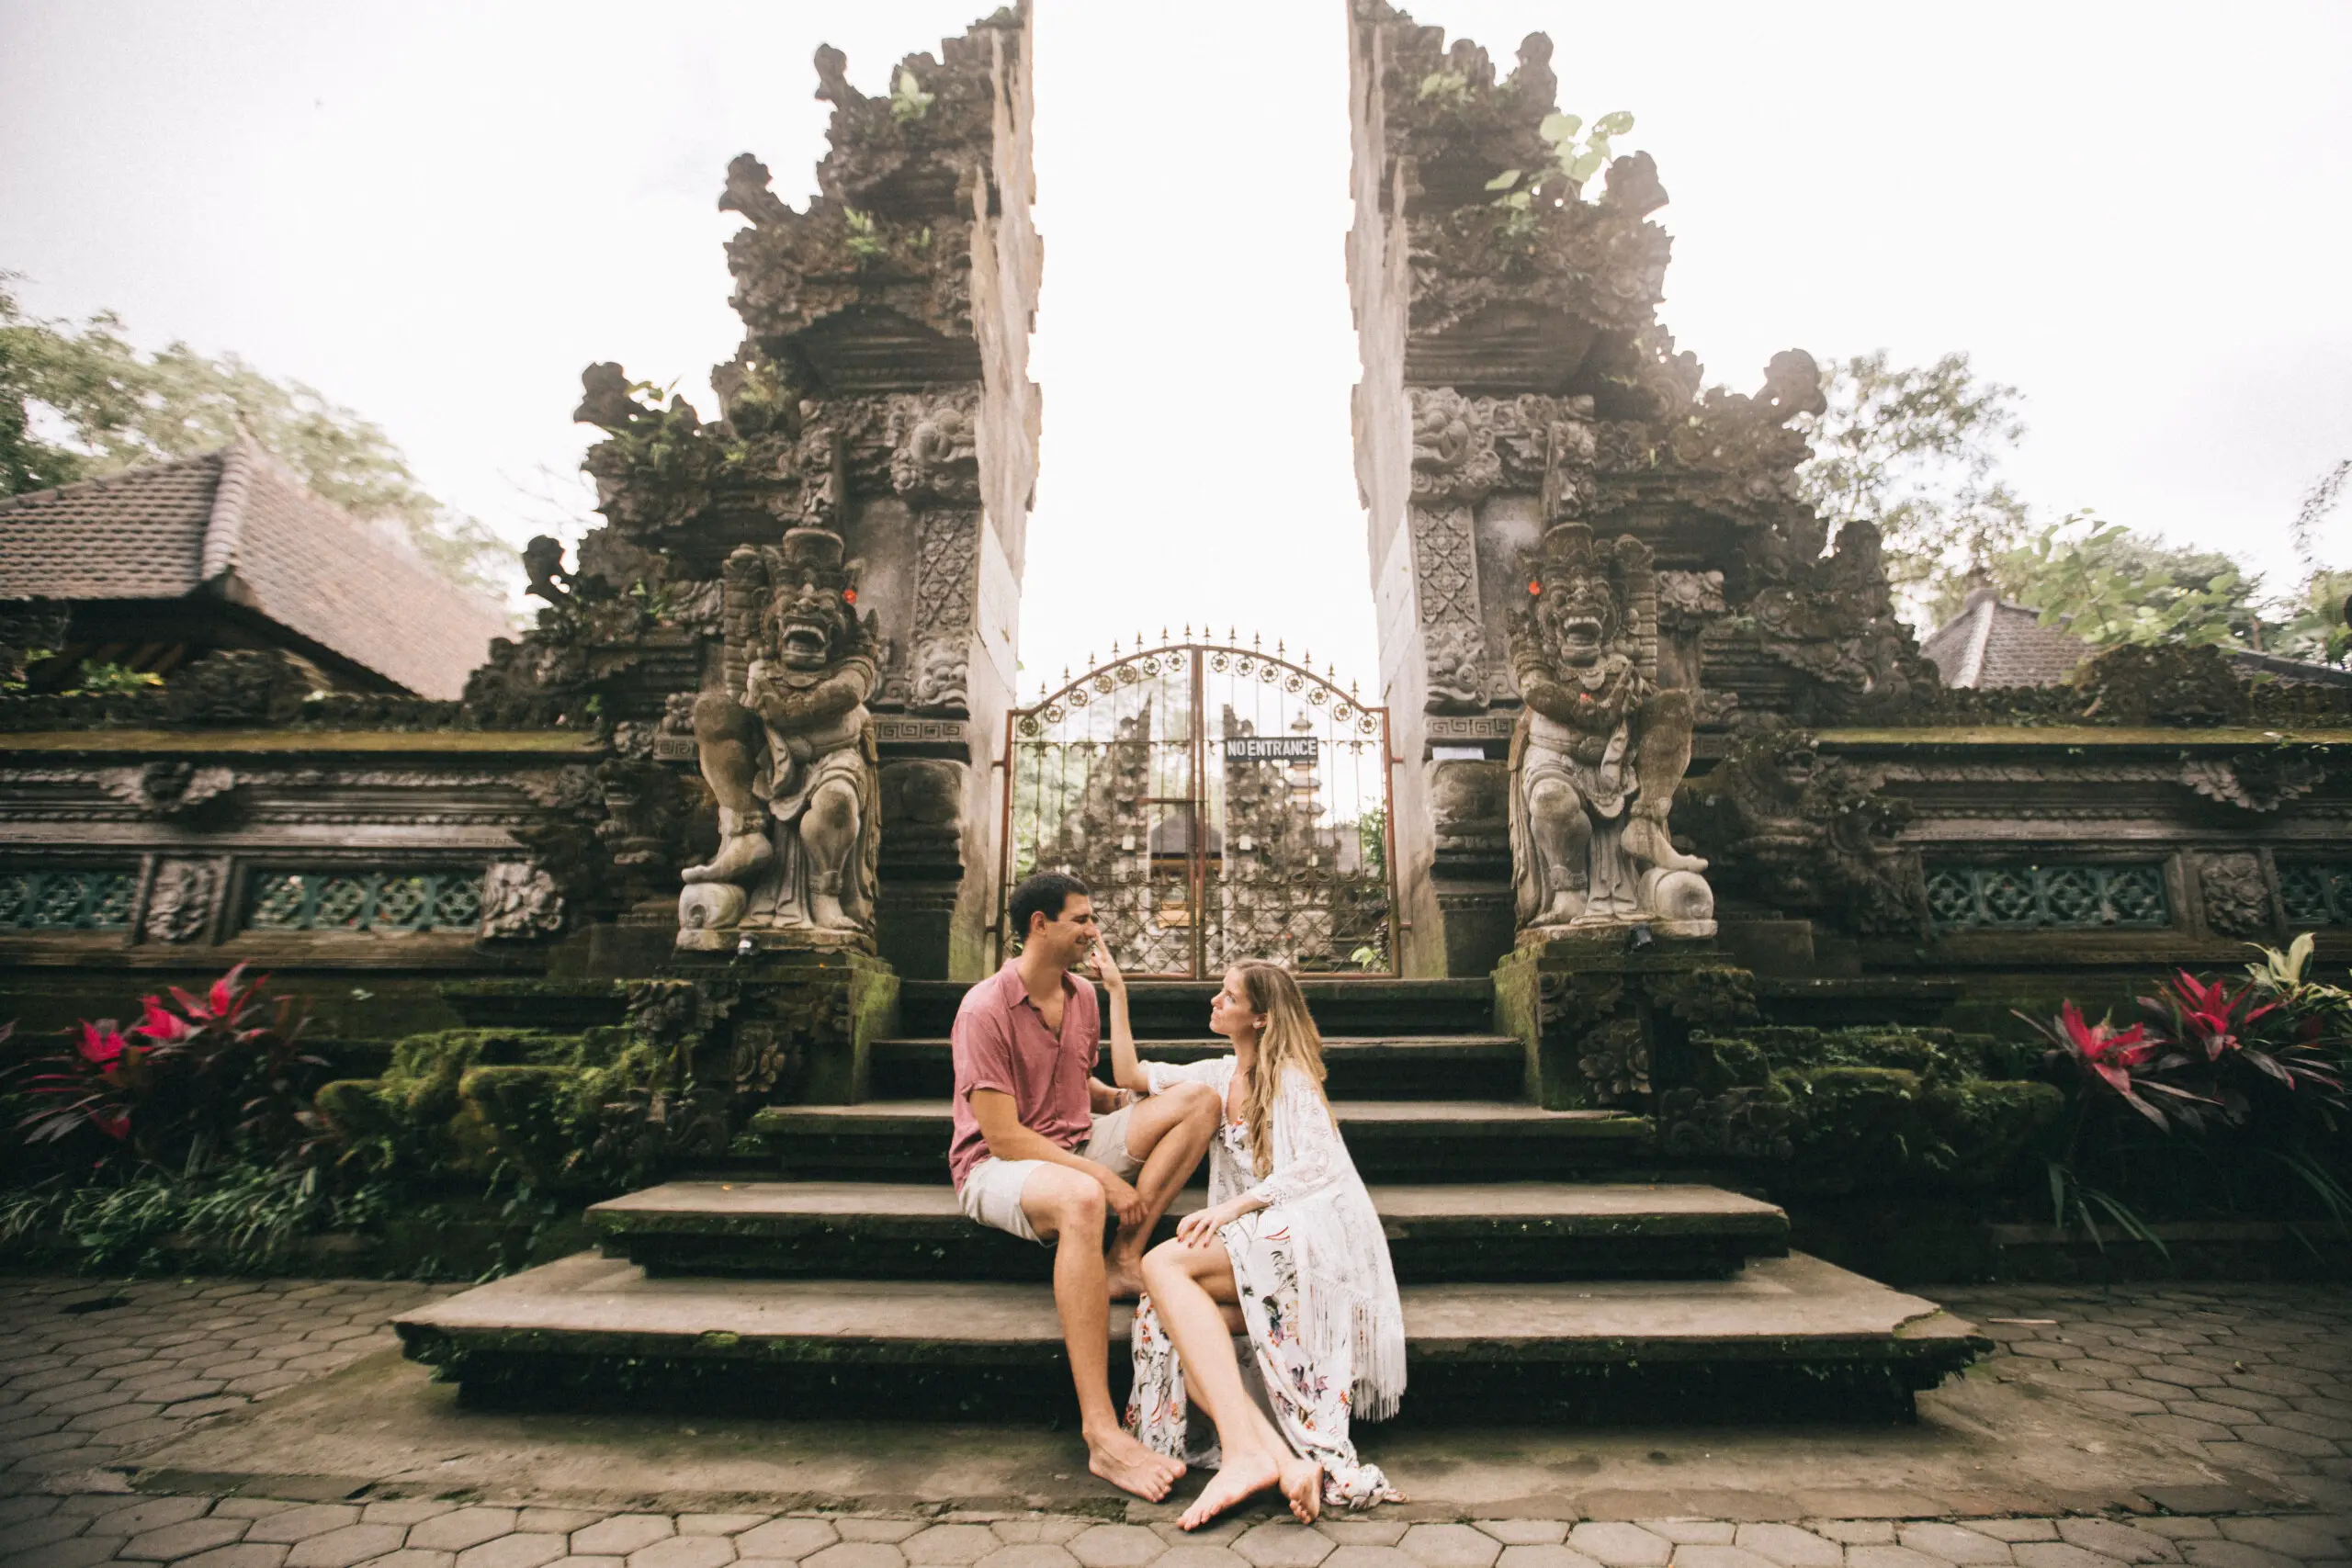 Honeymoon photoshoot by Suta, Localgrapher in Bali